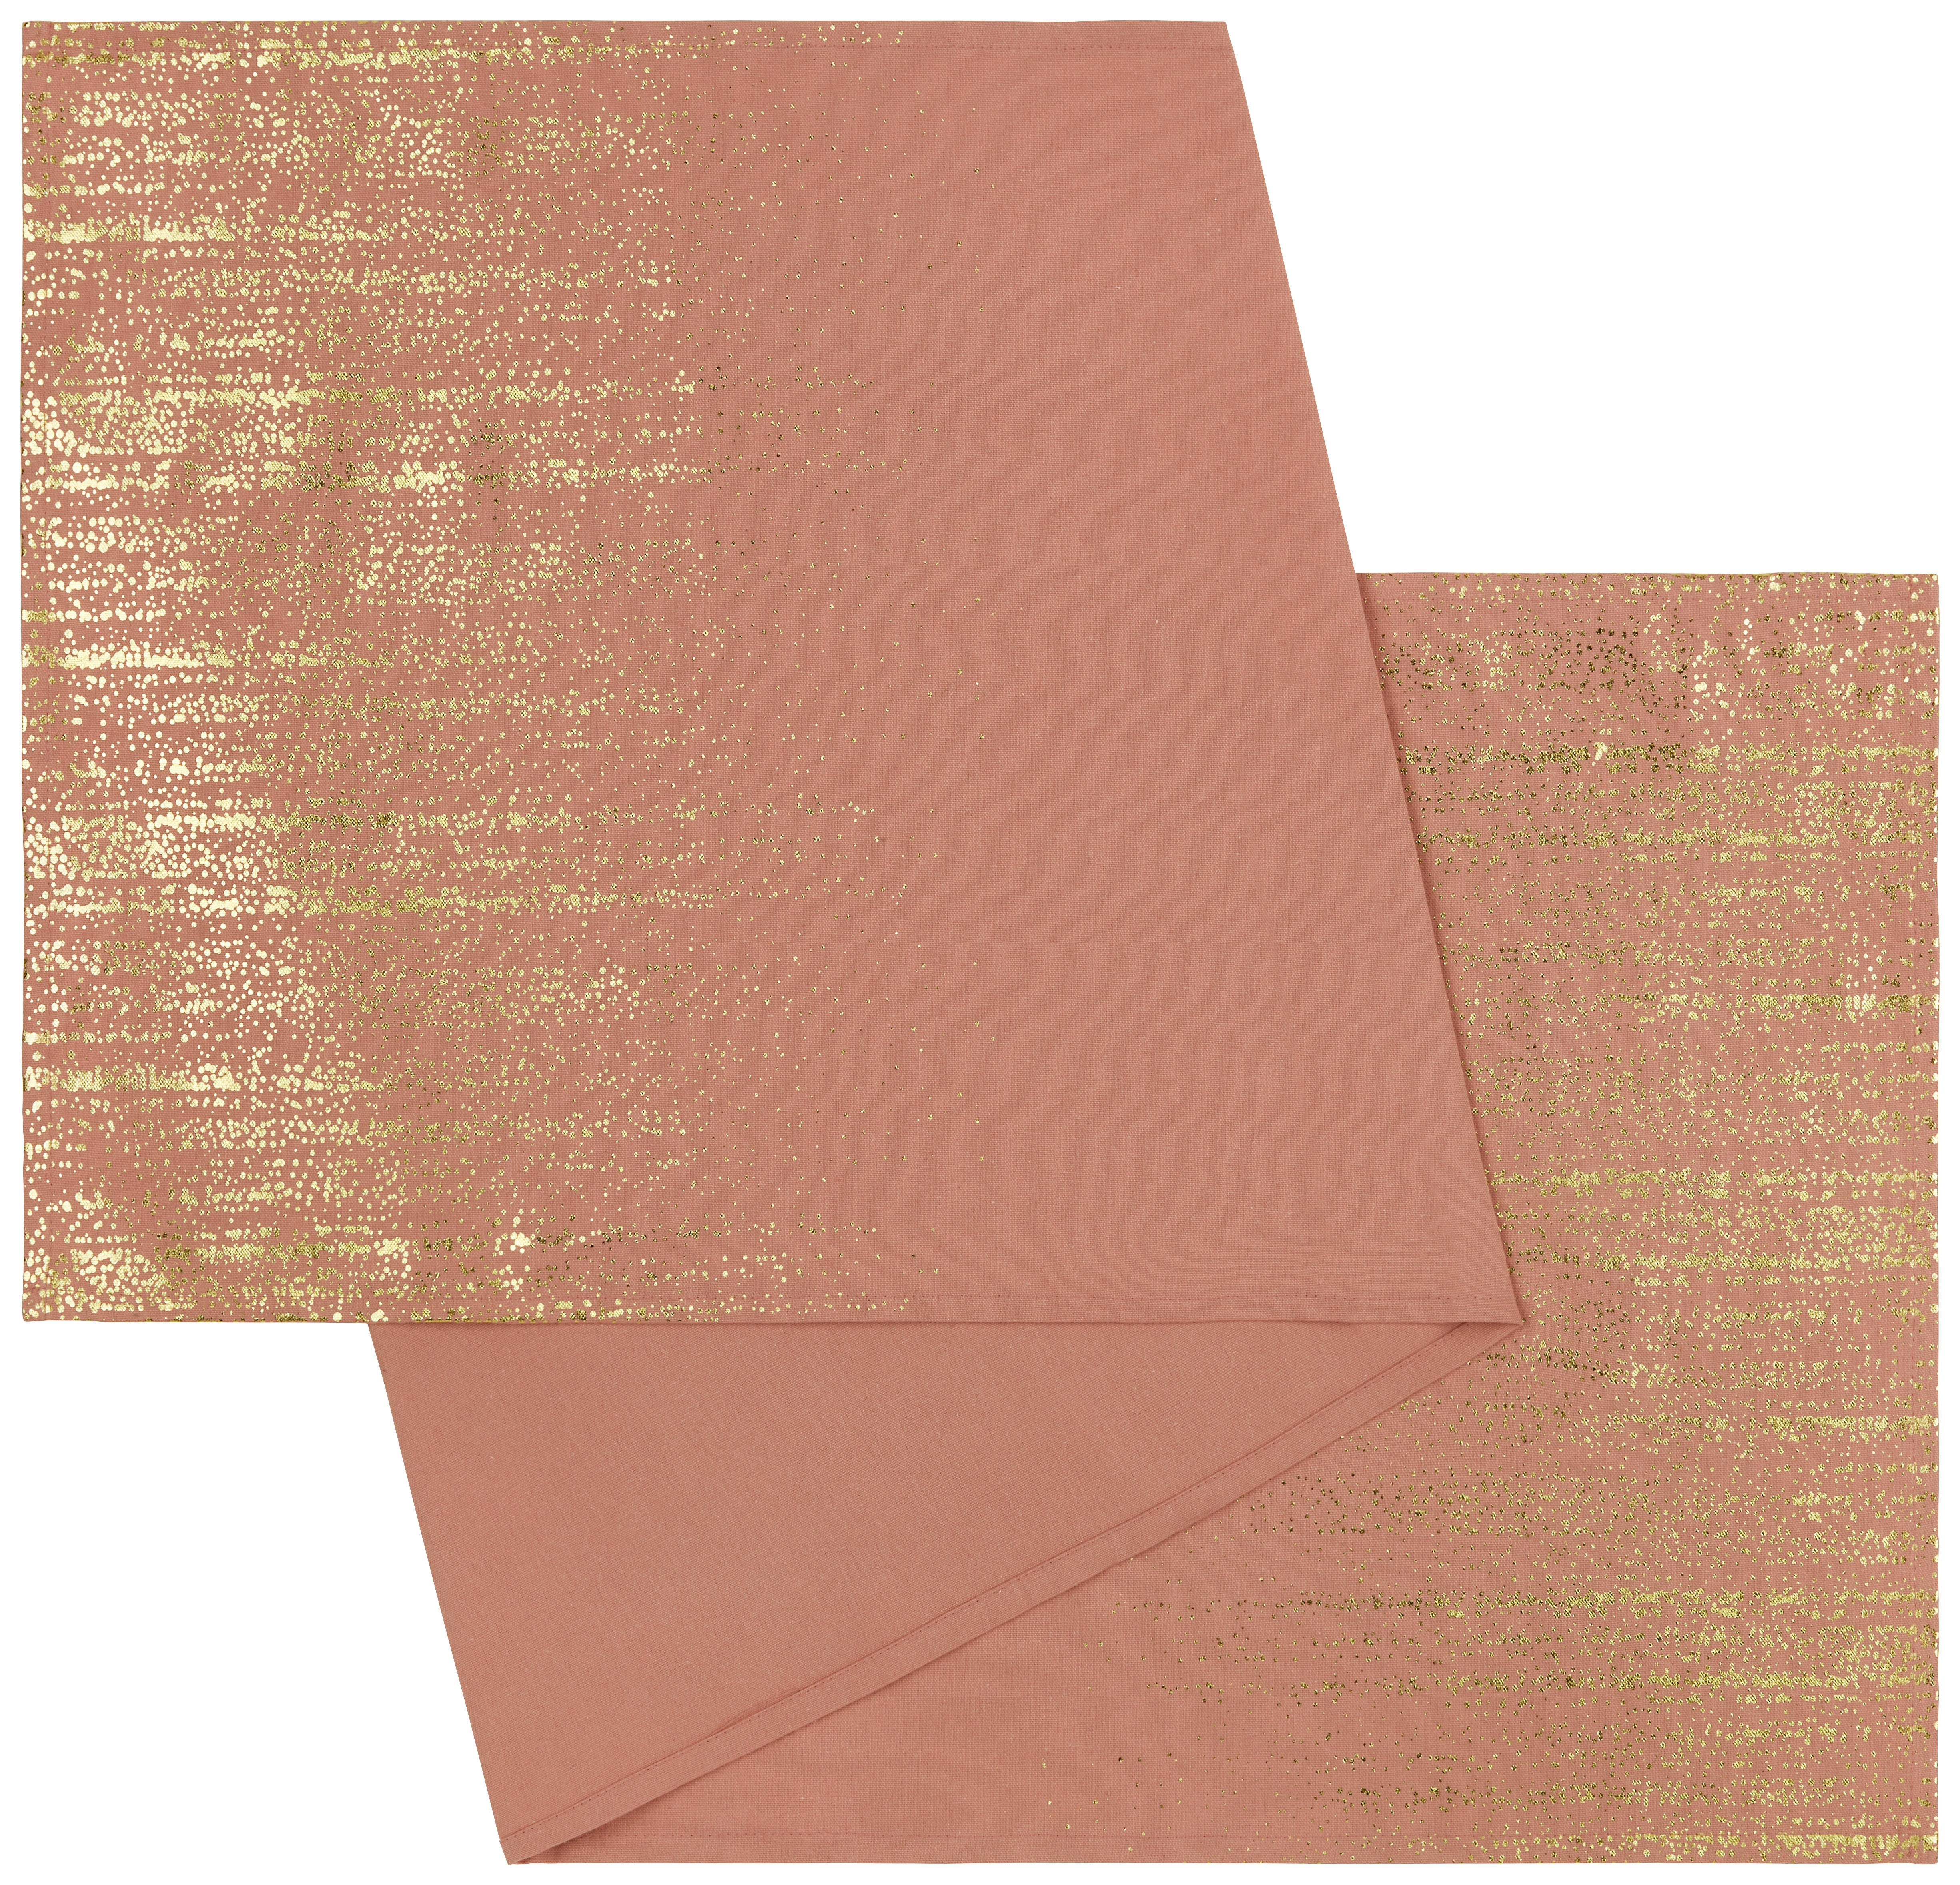 Úzky Obrus Golden Lights, 45/150cm,ružová - ružová, Romantický / Vidiecky, textil (45/150cm) - Modern Living